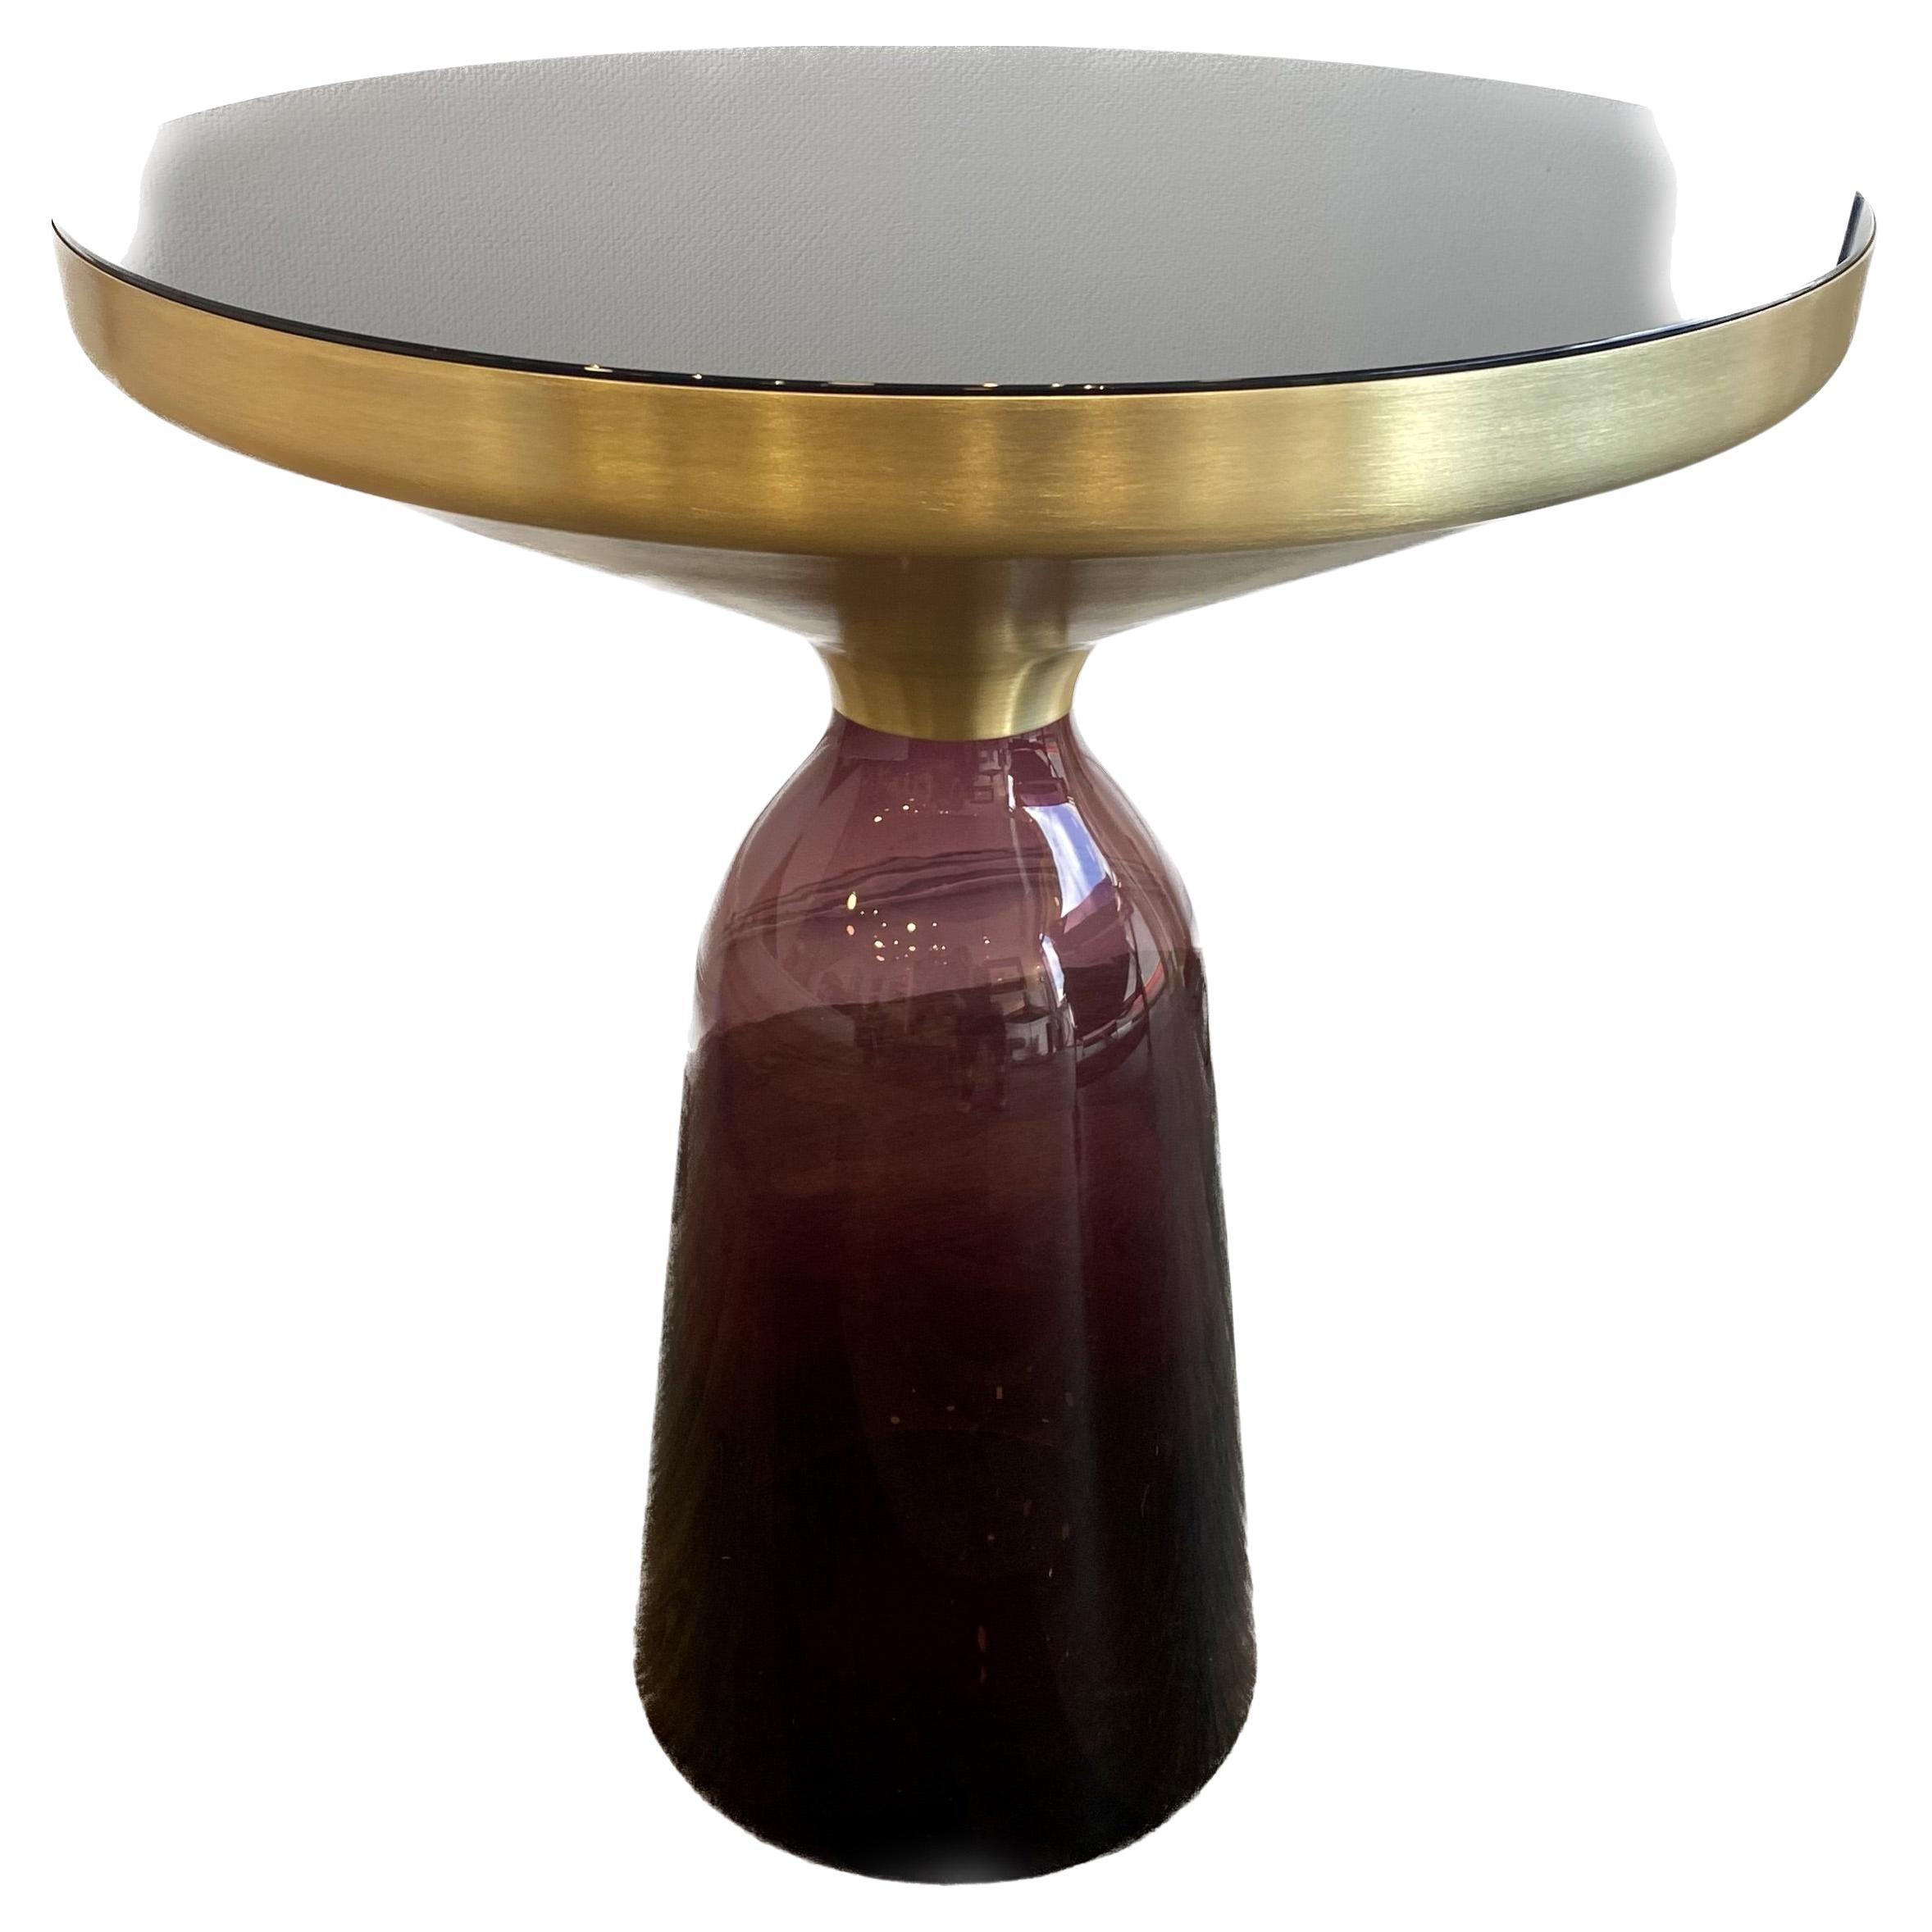 Bell side table - Classicon edition - Design Sebastian Herkner